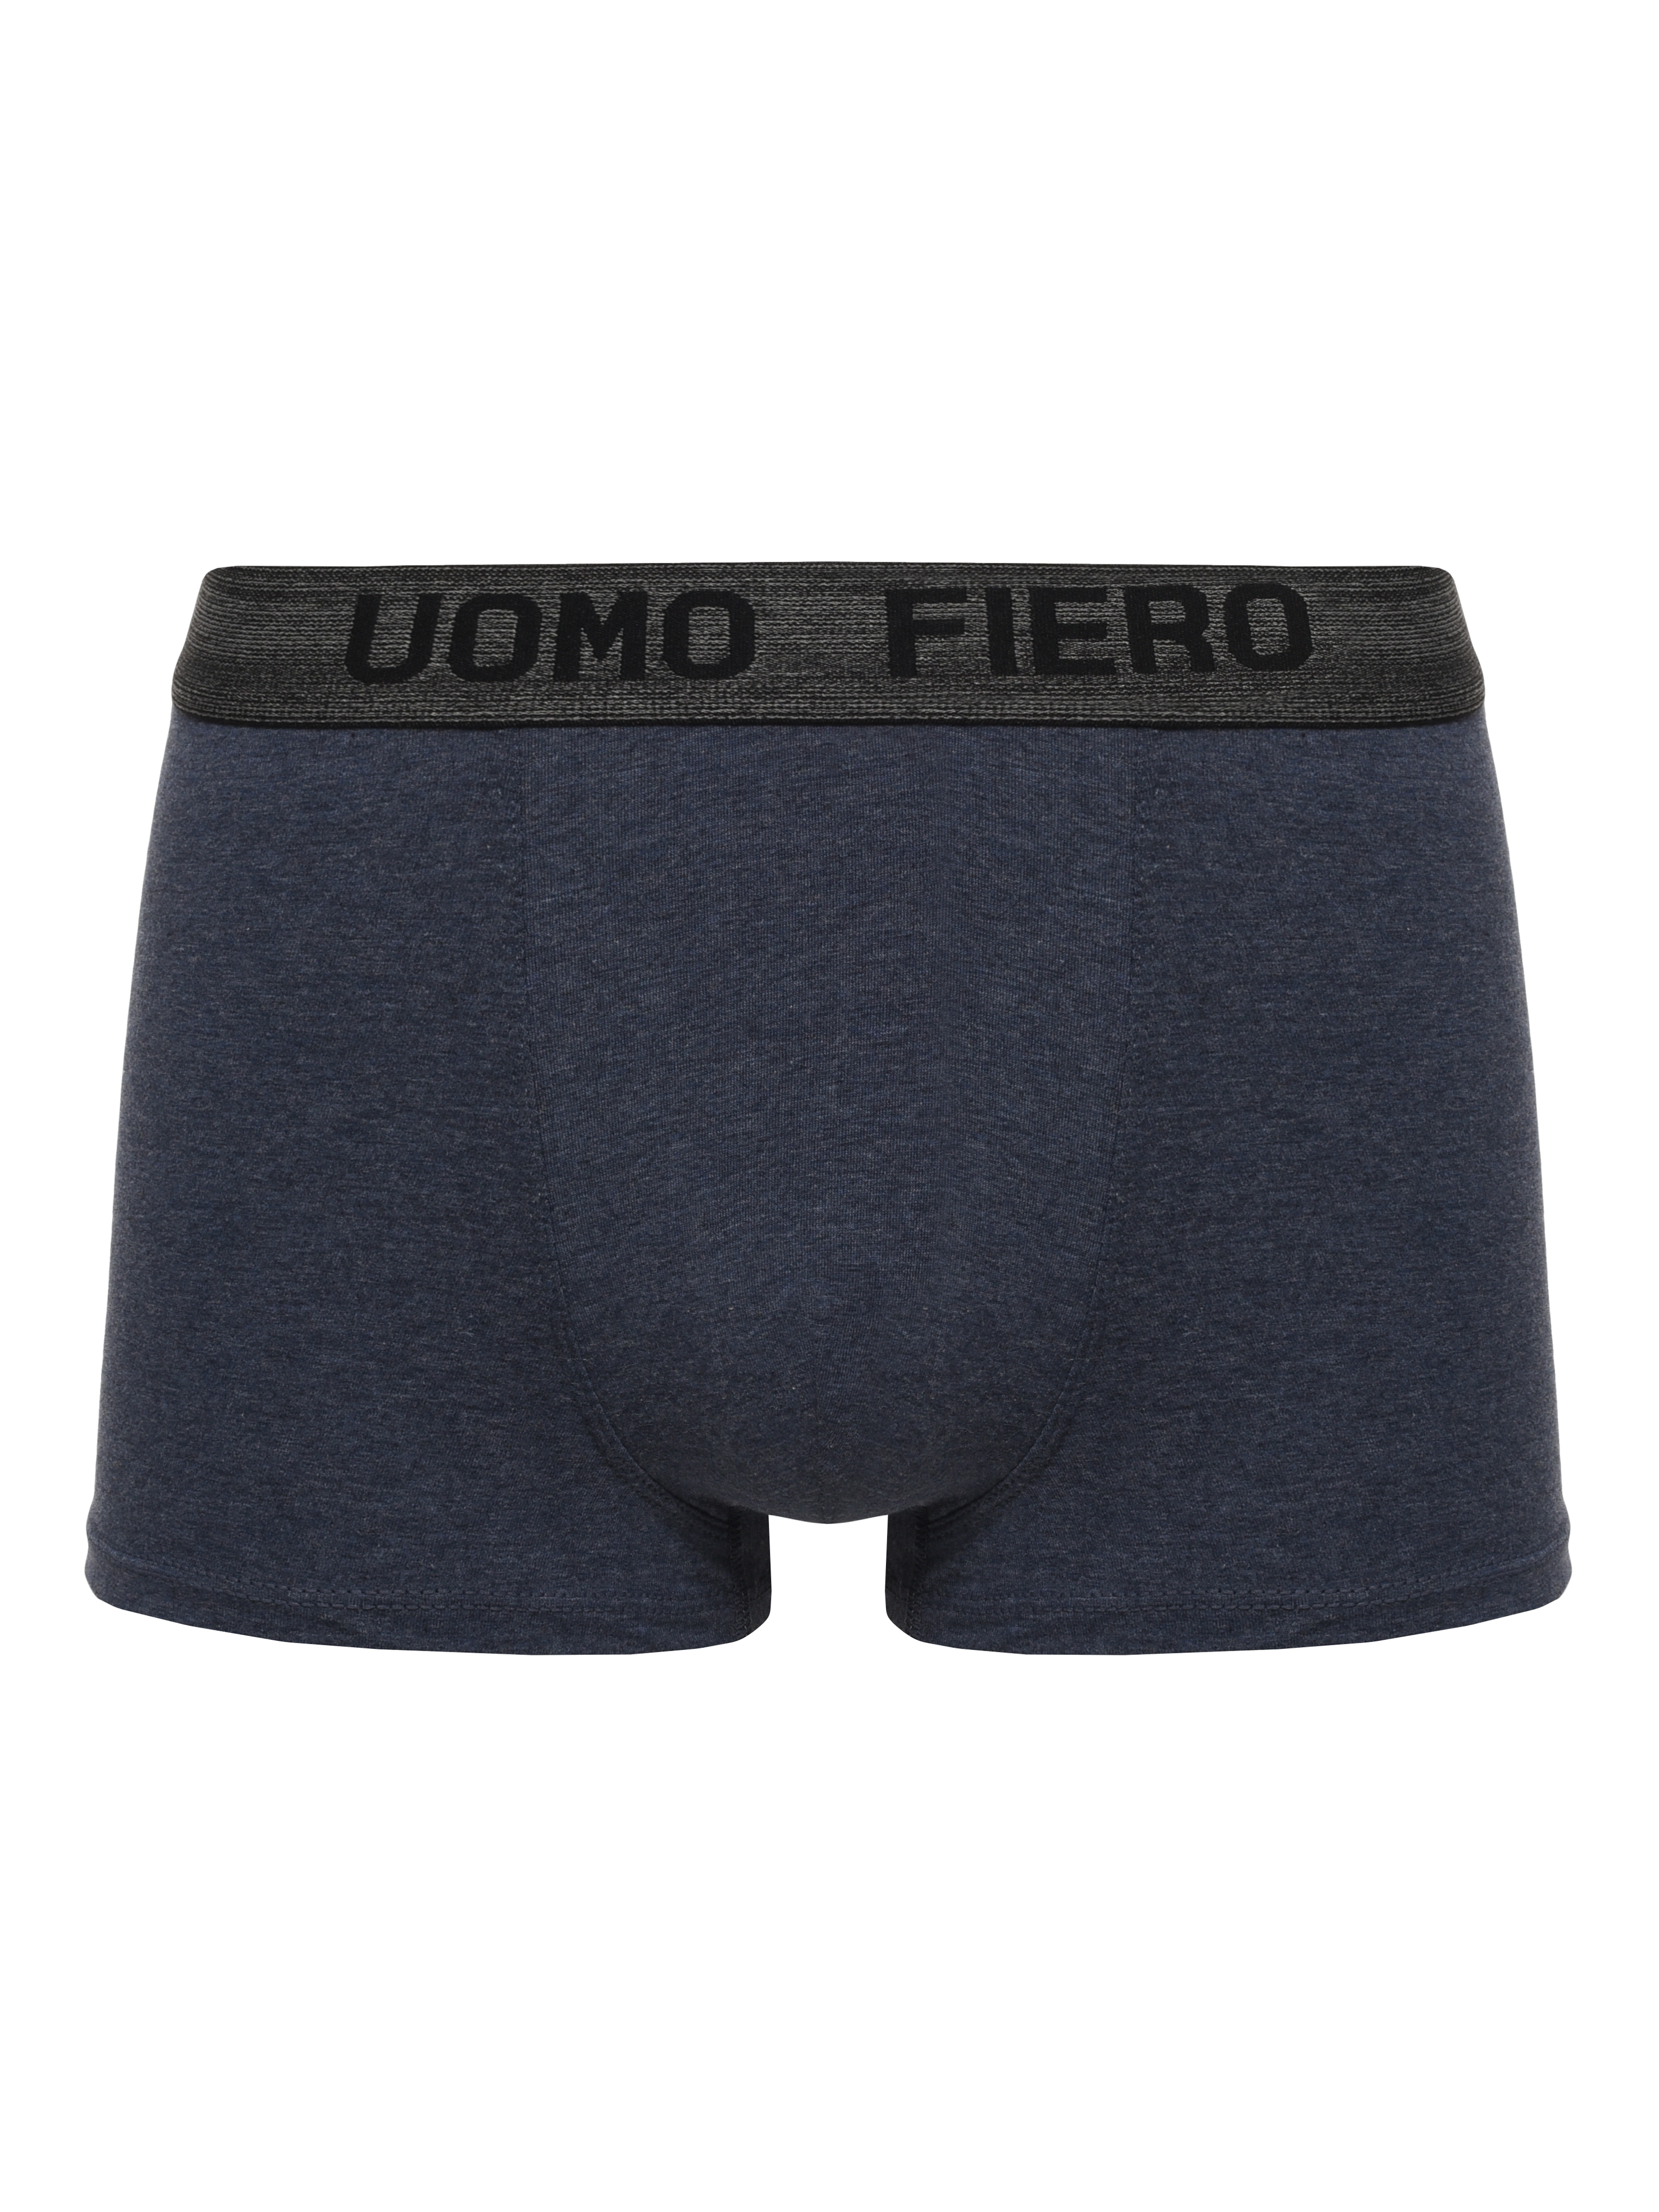 Трусы мужские UOMO FIERO 027FH синие 52 RU